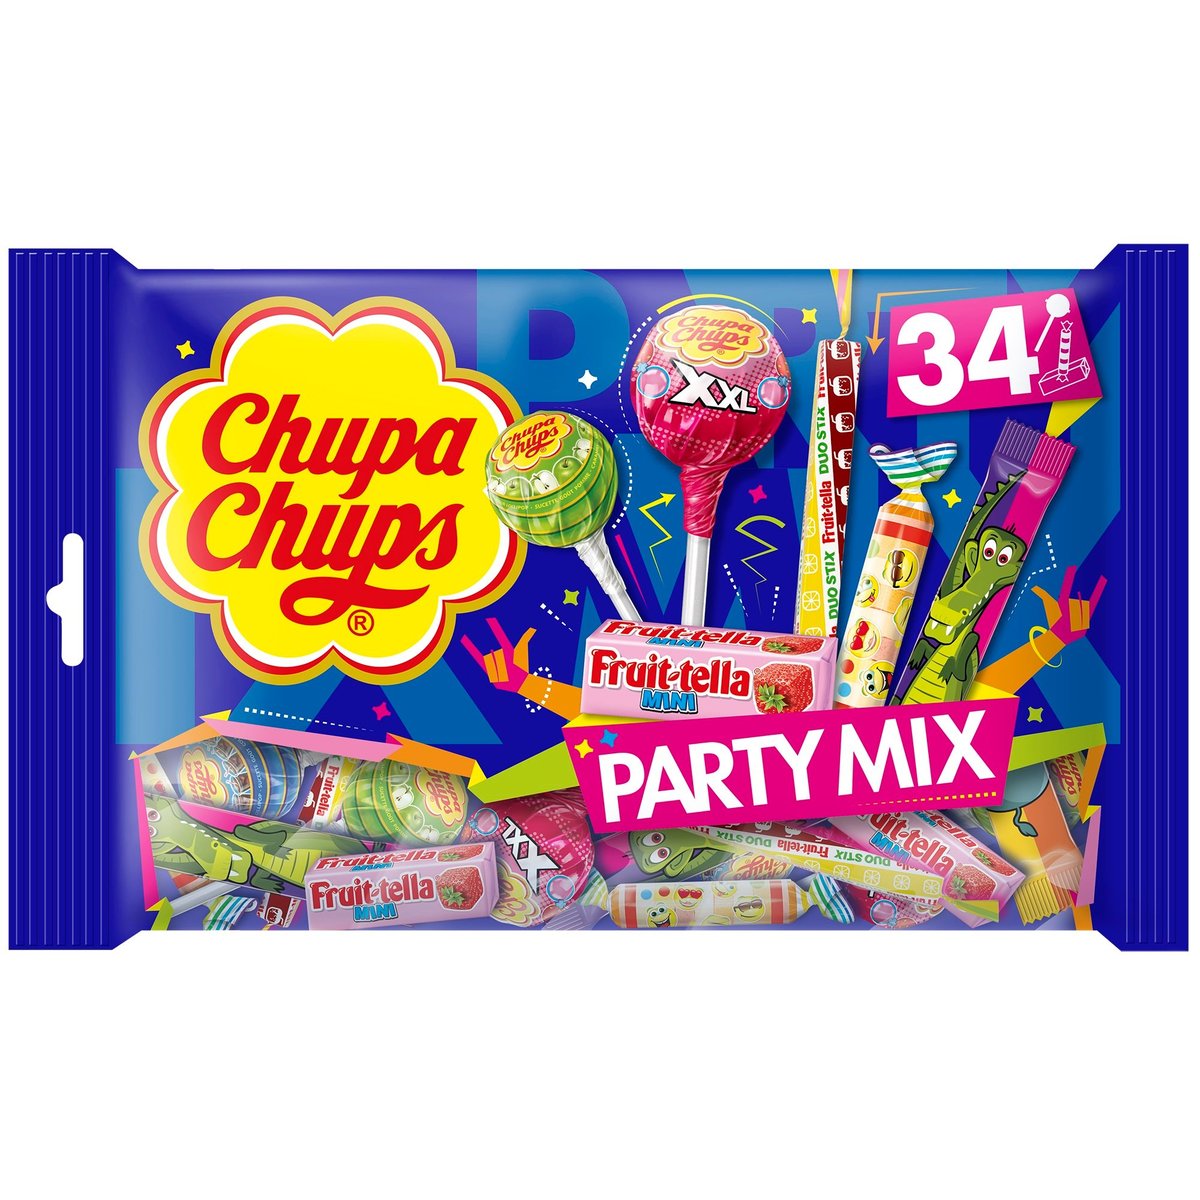 Chupa Chups Party mix